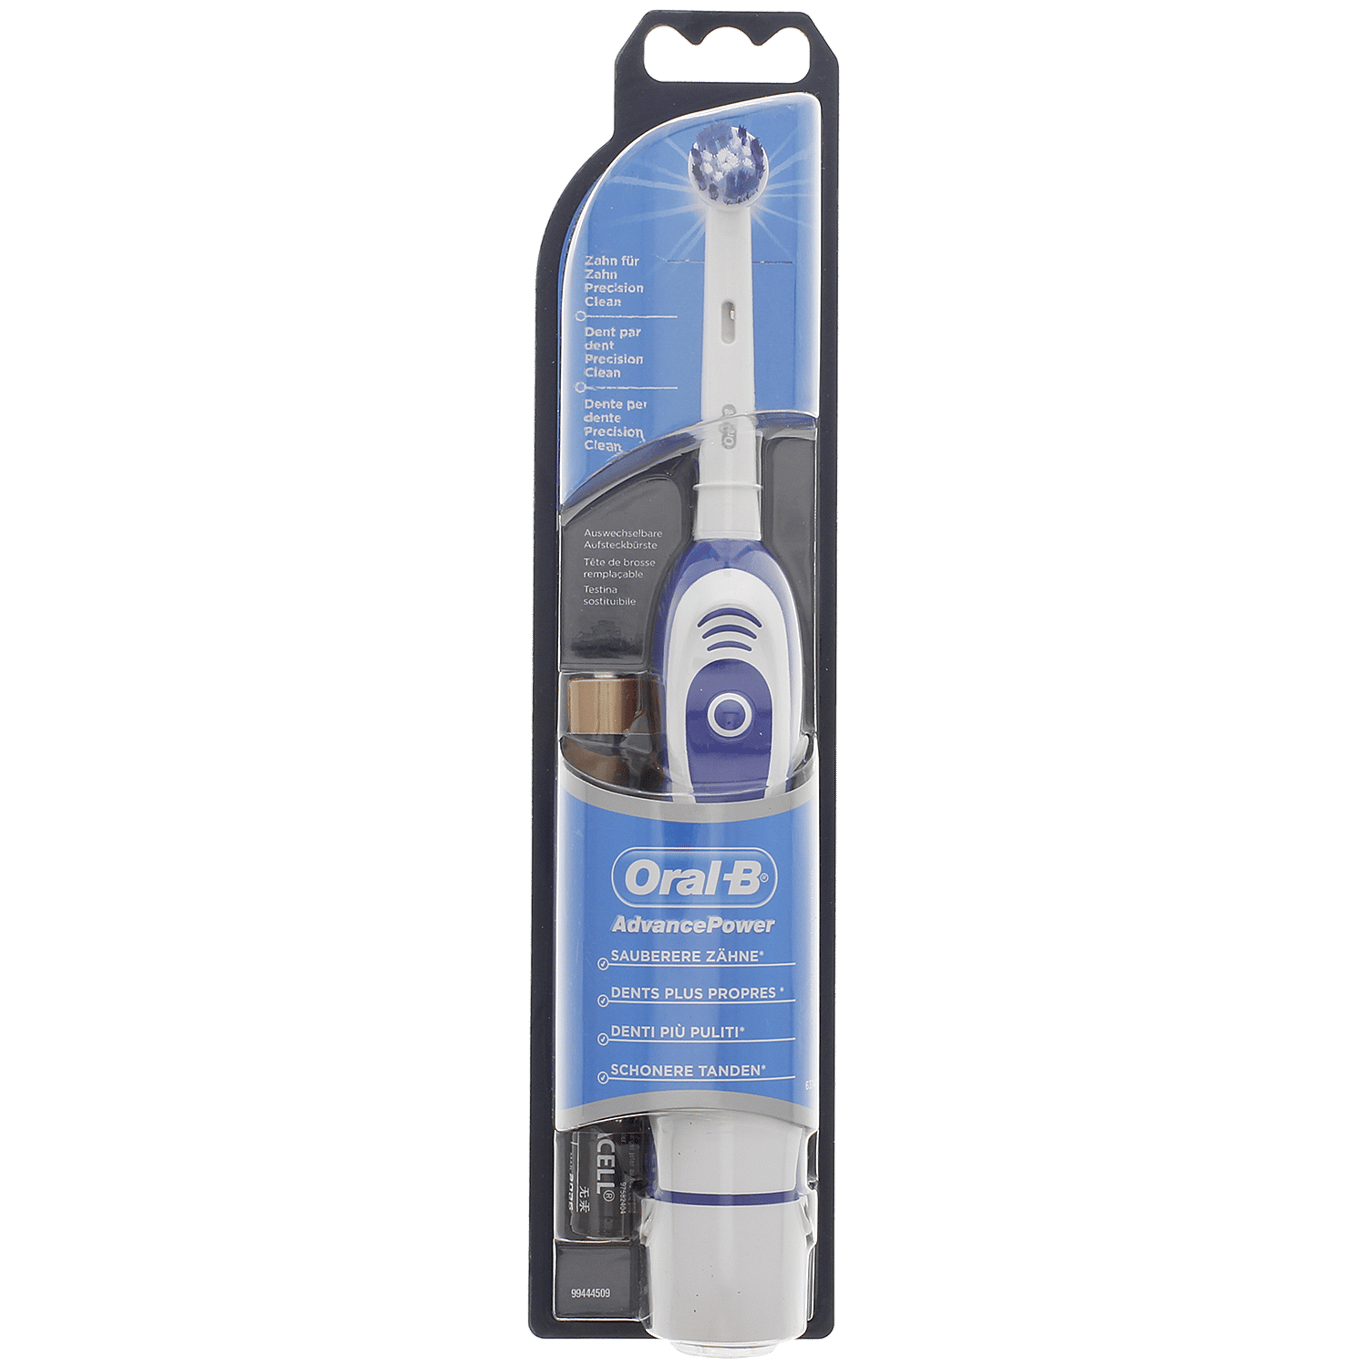 Panorama Mevrouw Om toestemming te geven Oral-B elektrische tandenborstel | Action.com